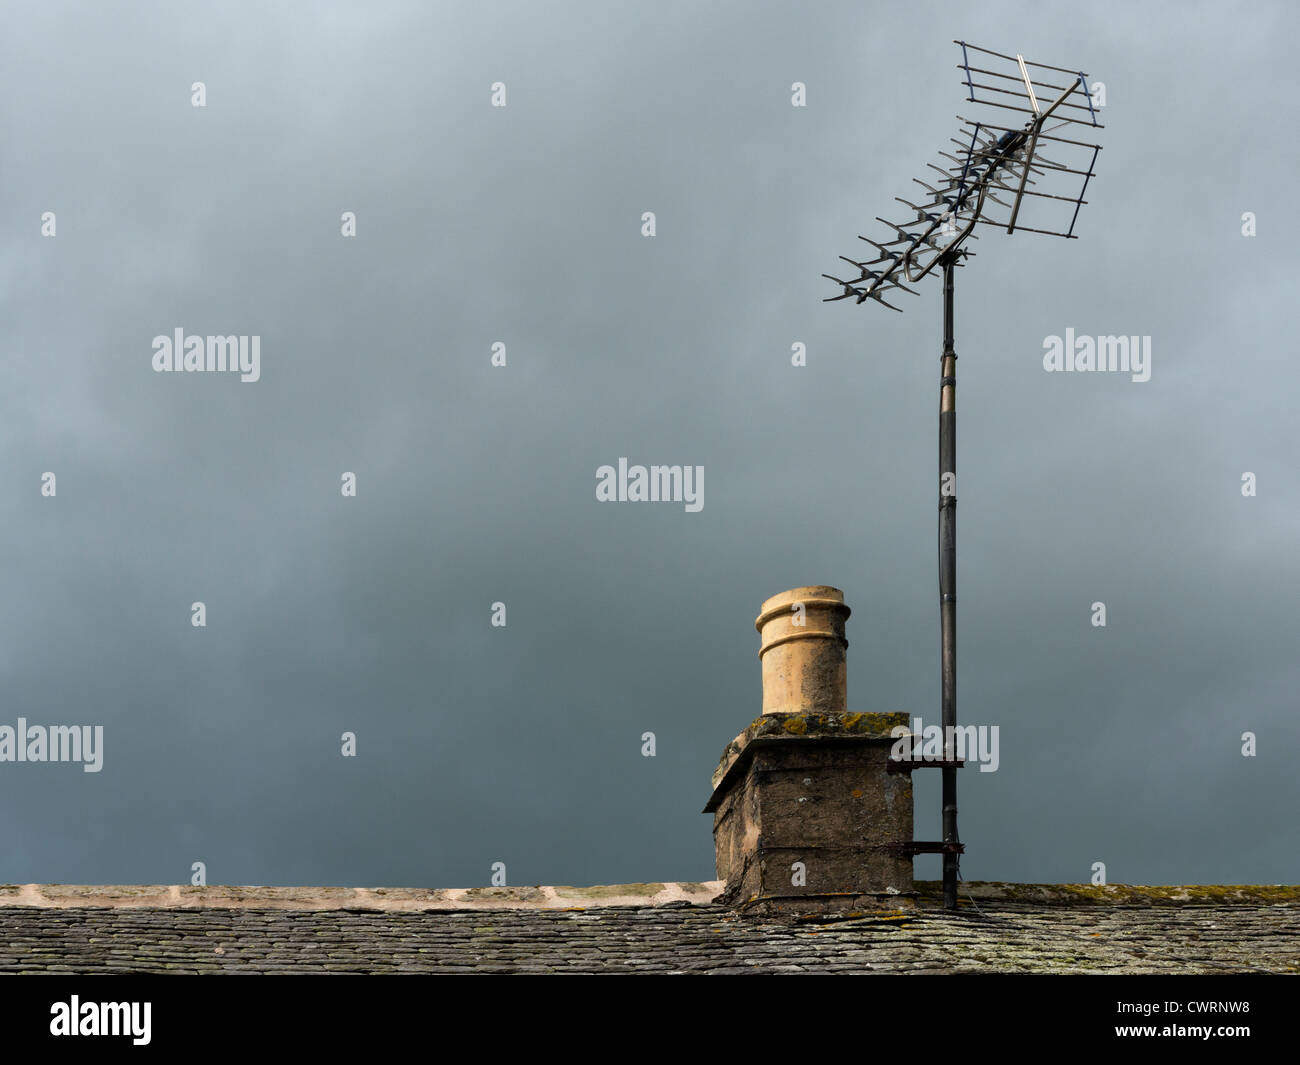 Landhaus Stein Kamin und Teil der Schieferdach mit TV Antenne vor einem dunklen grüblerischen Himmel Stockfoto